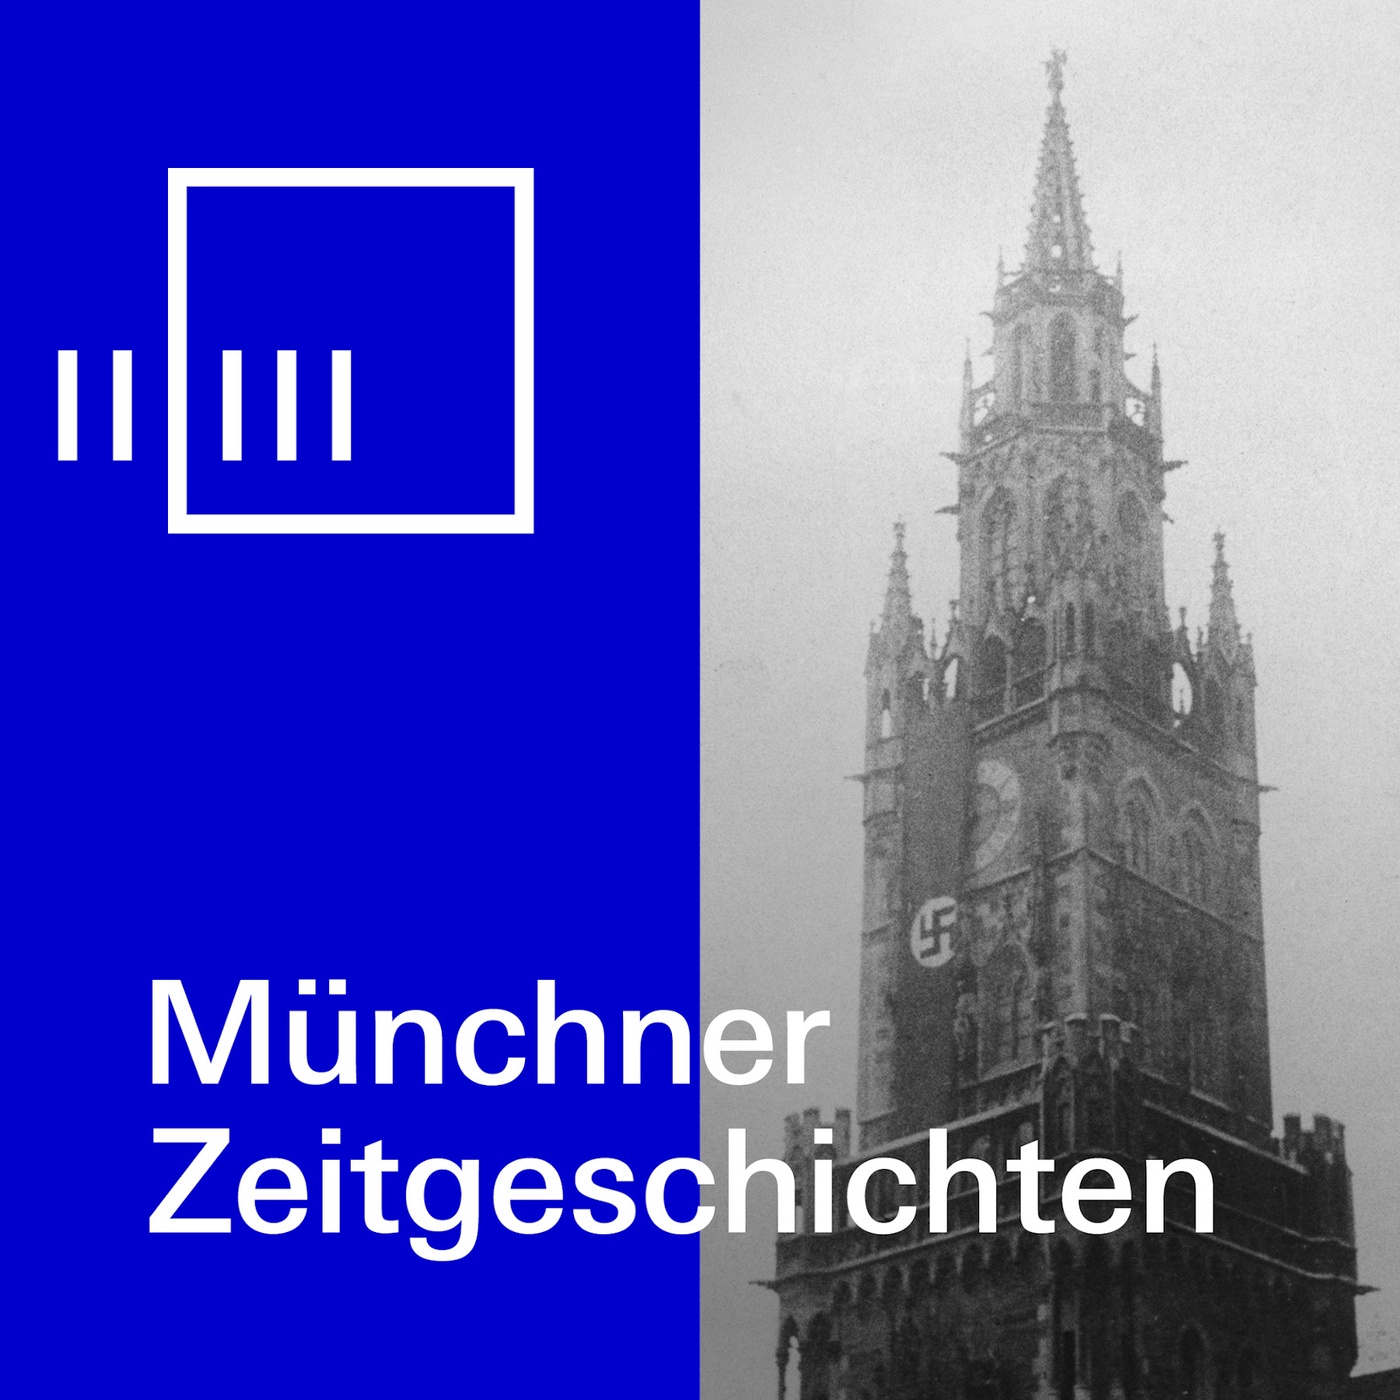 Münchner Zeitgeschichten